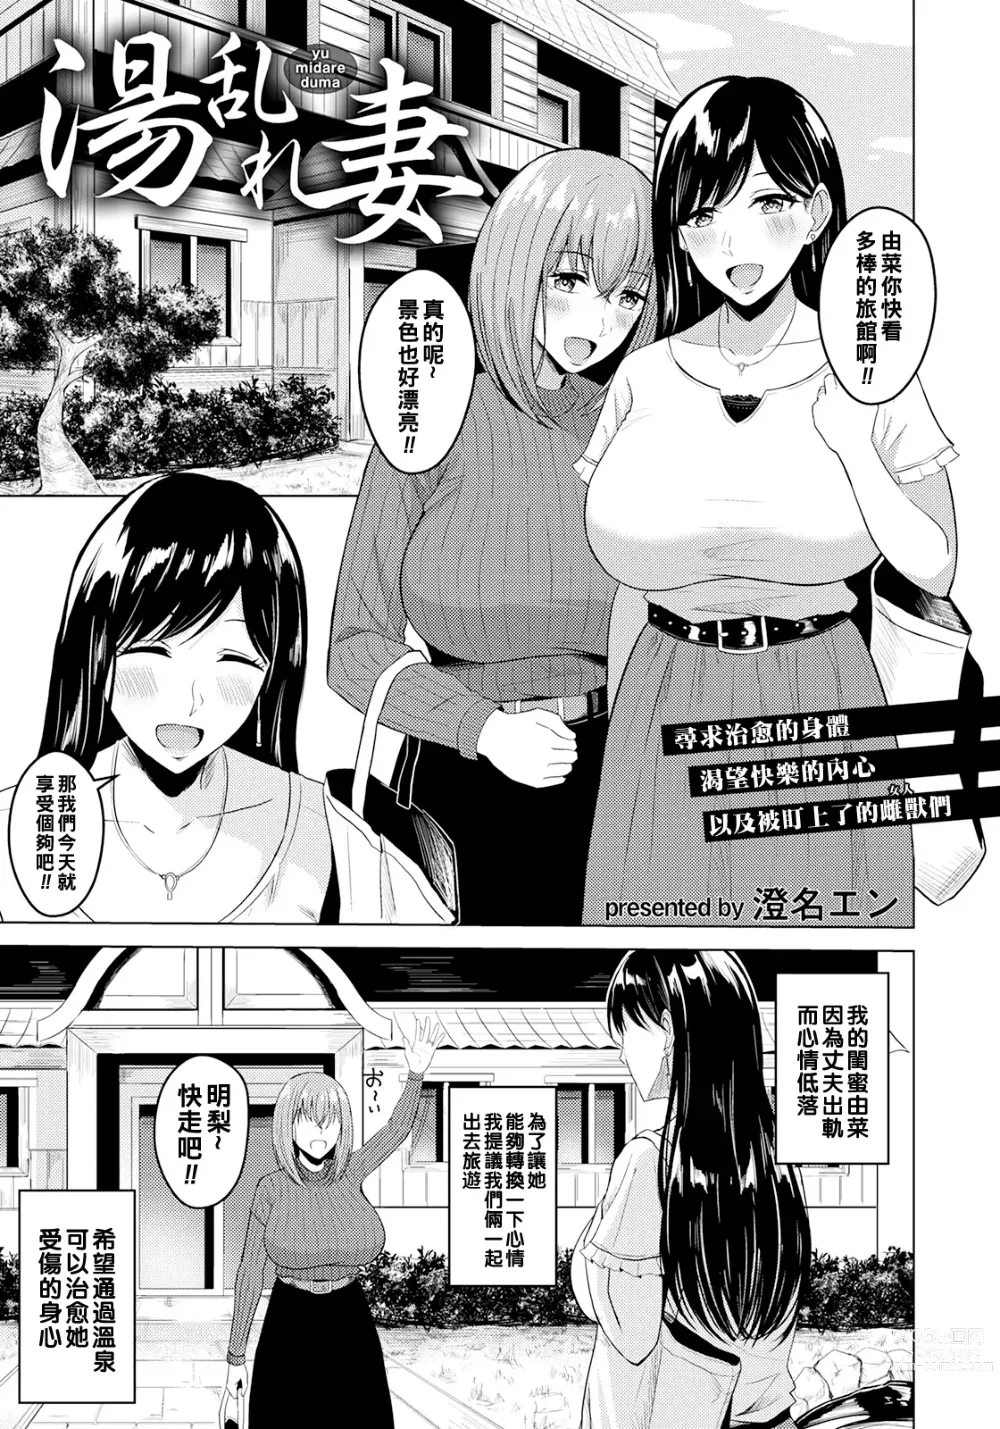 Page 1 of manga Yu Midare Duma